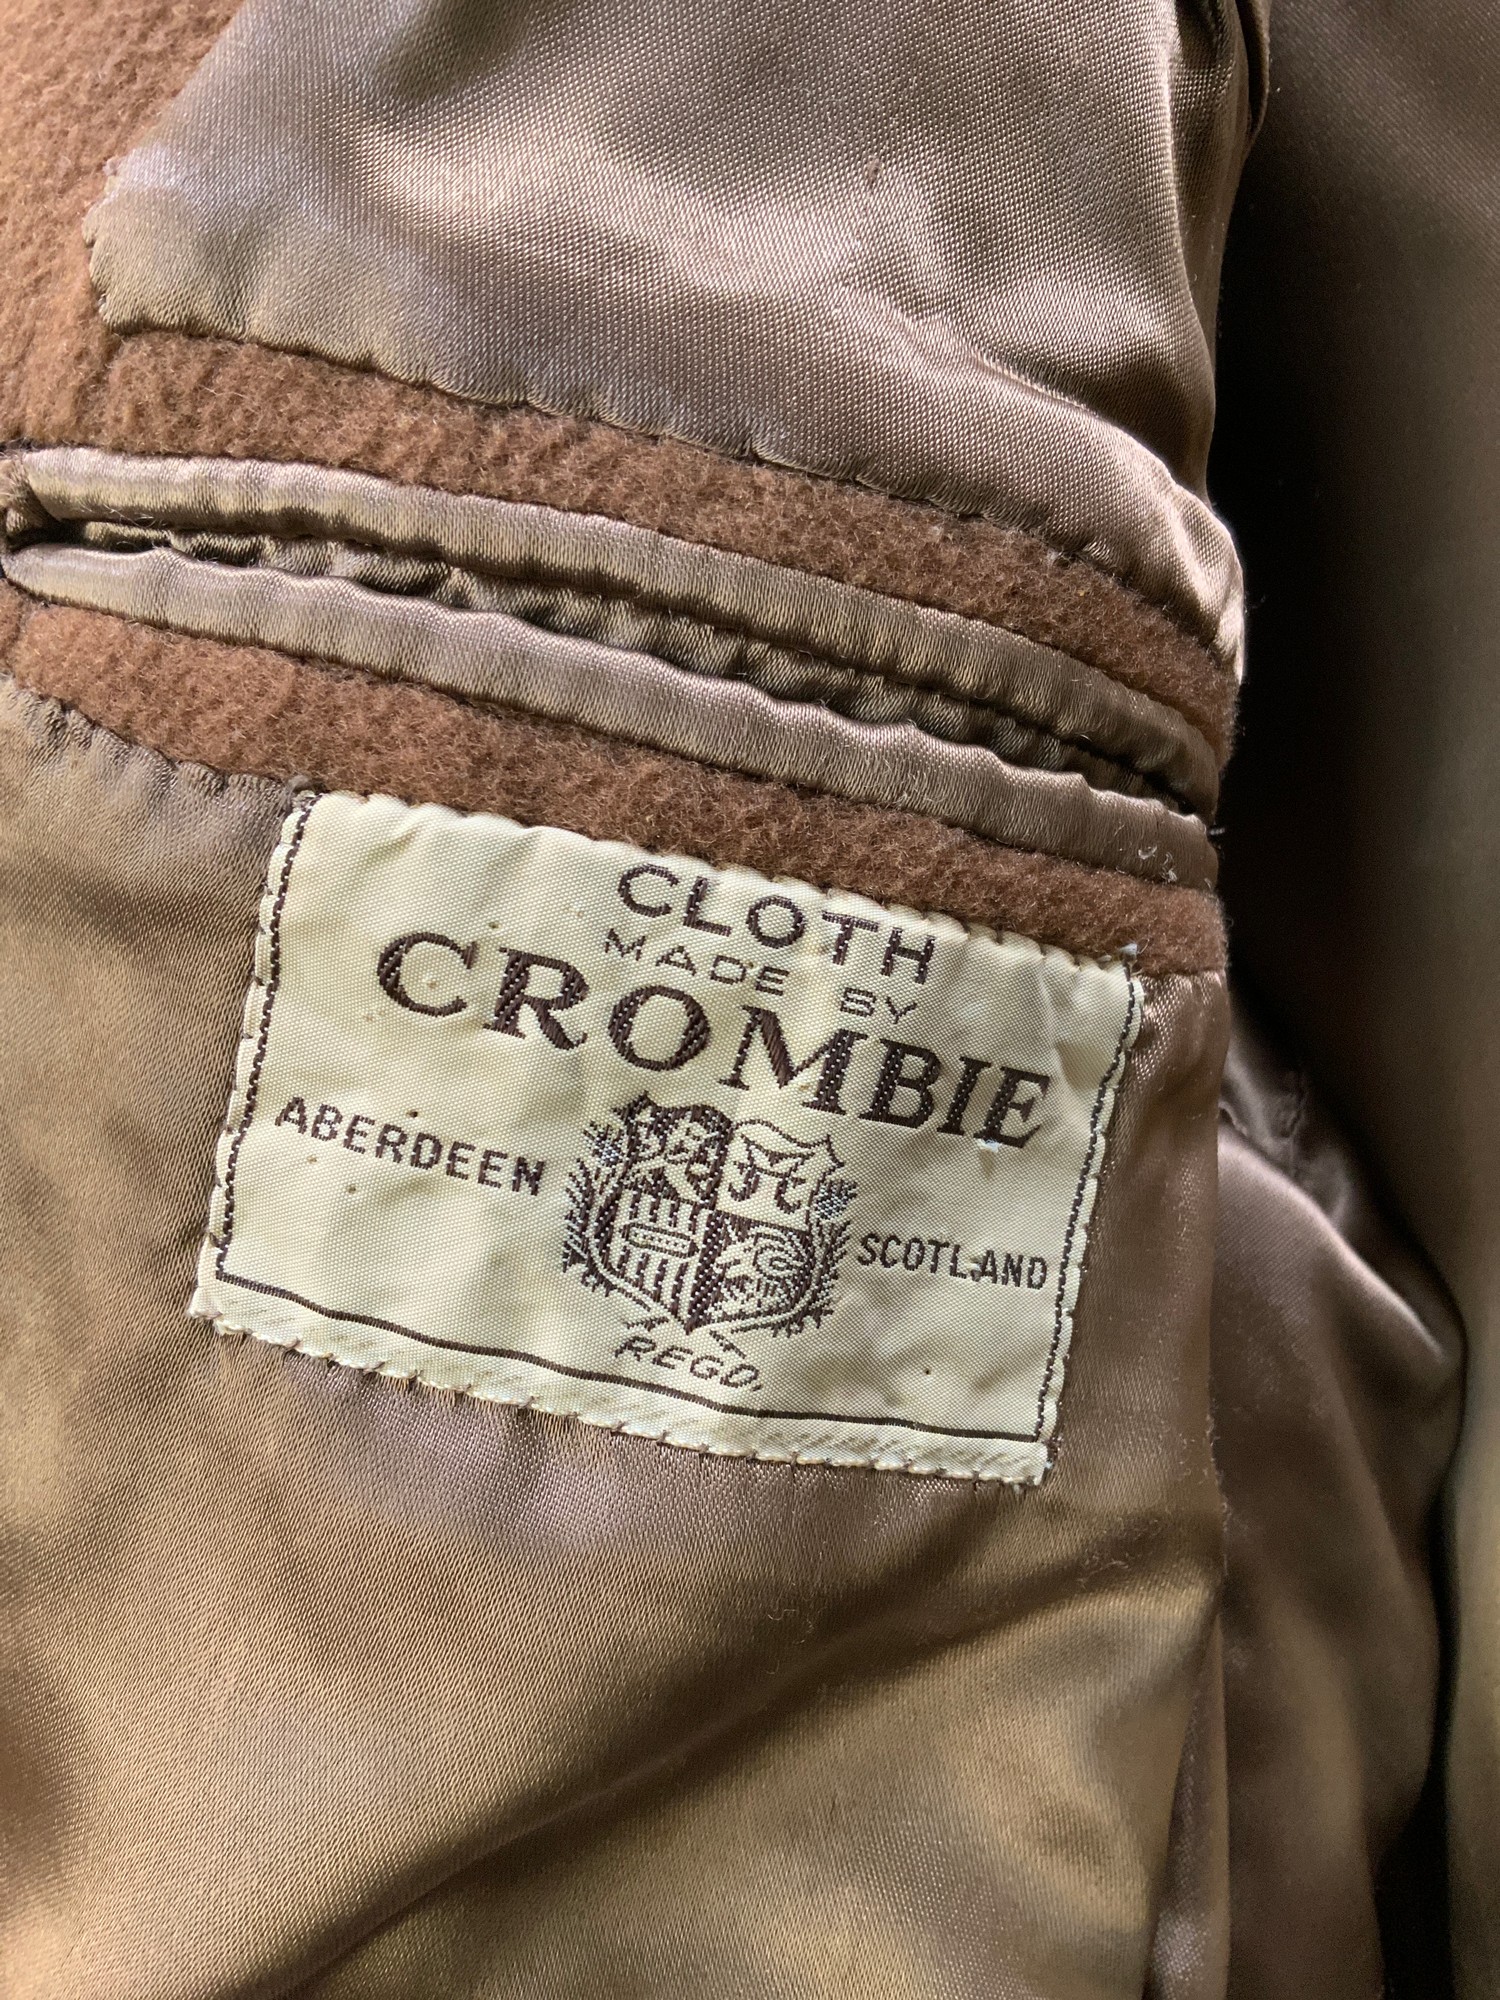 Gents Crombie Wool Coat - Image 2 of 2